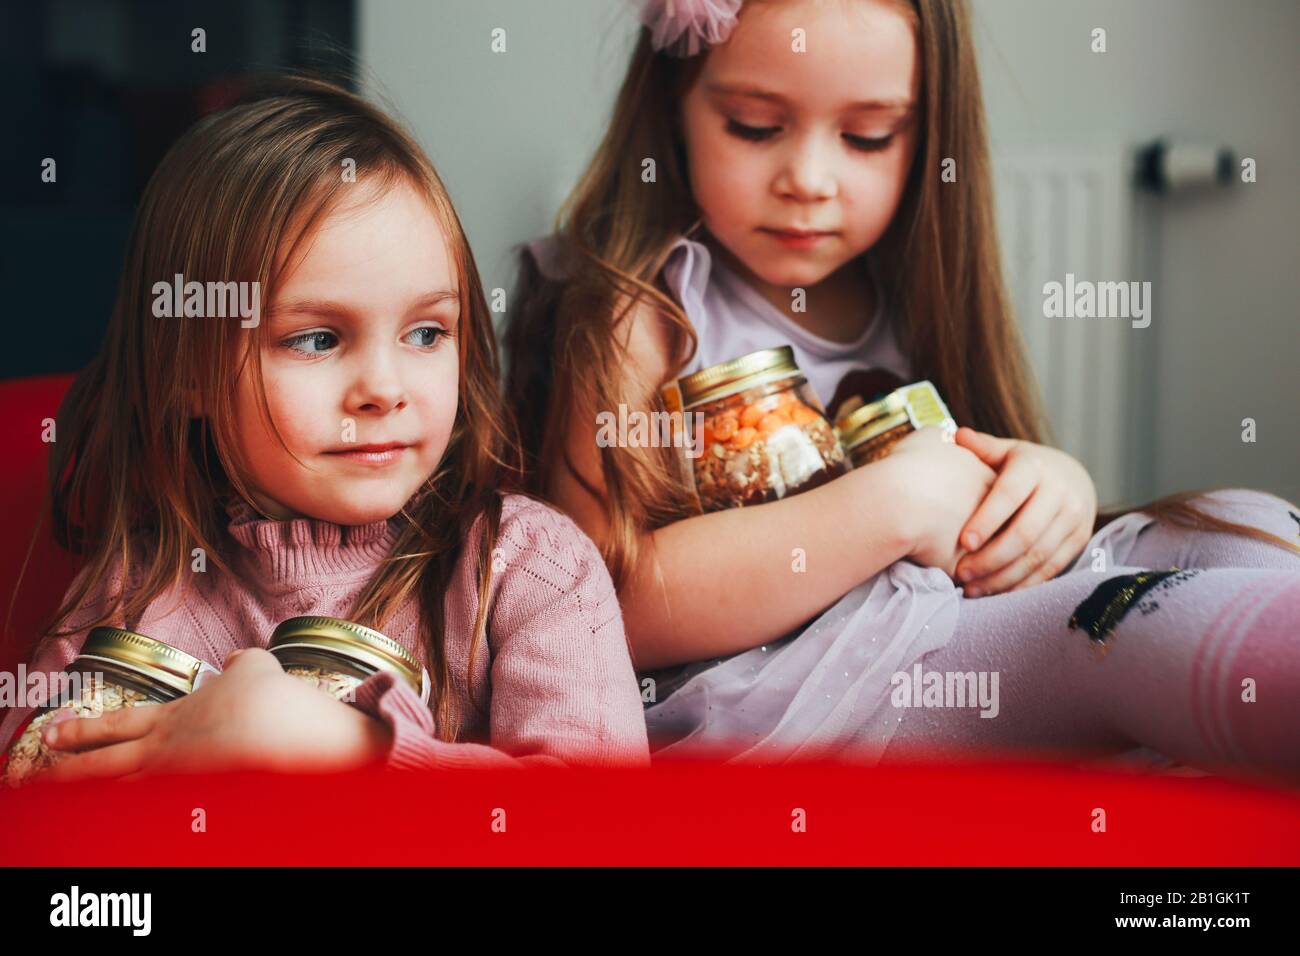 Dos lindas chicas pequeñas. niñas jugando de stock Alamy